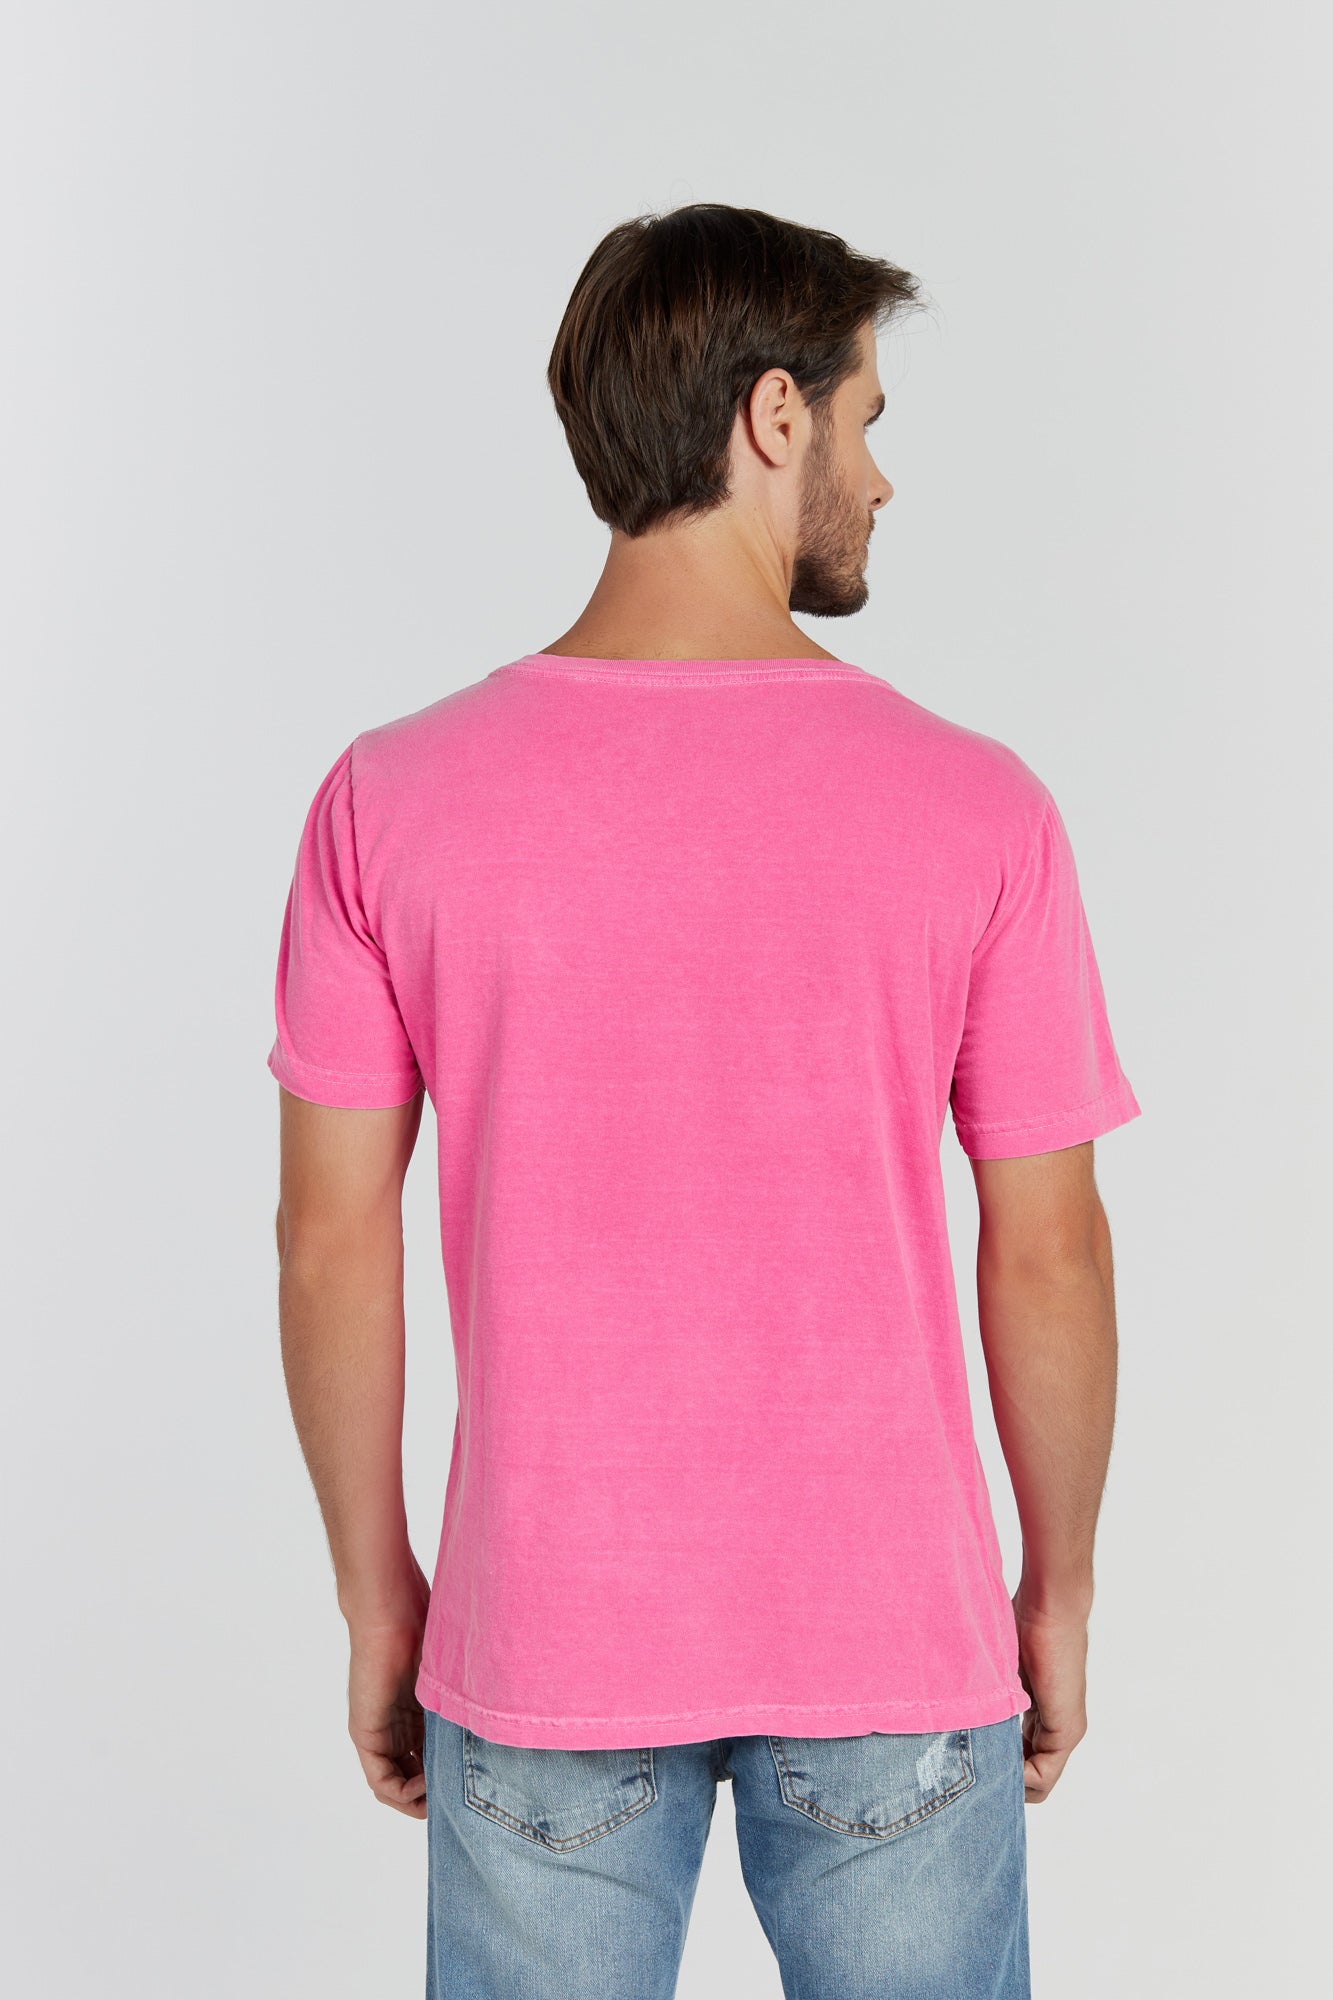 Camiseta Estonada Rosa Pink